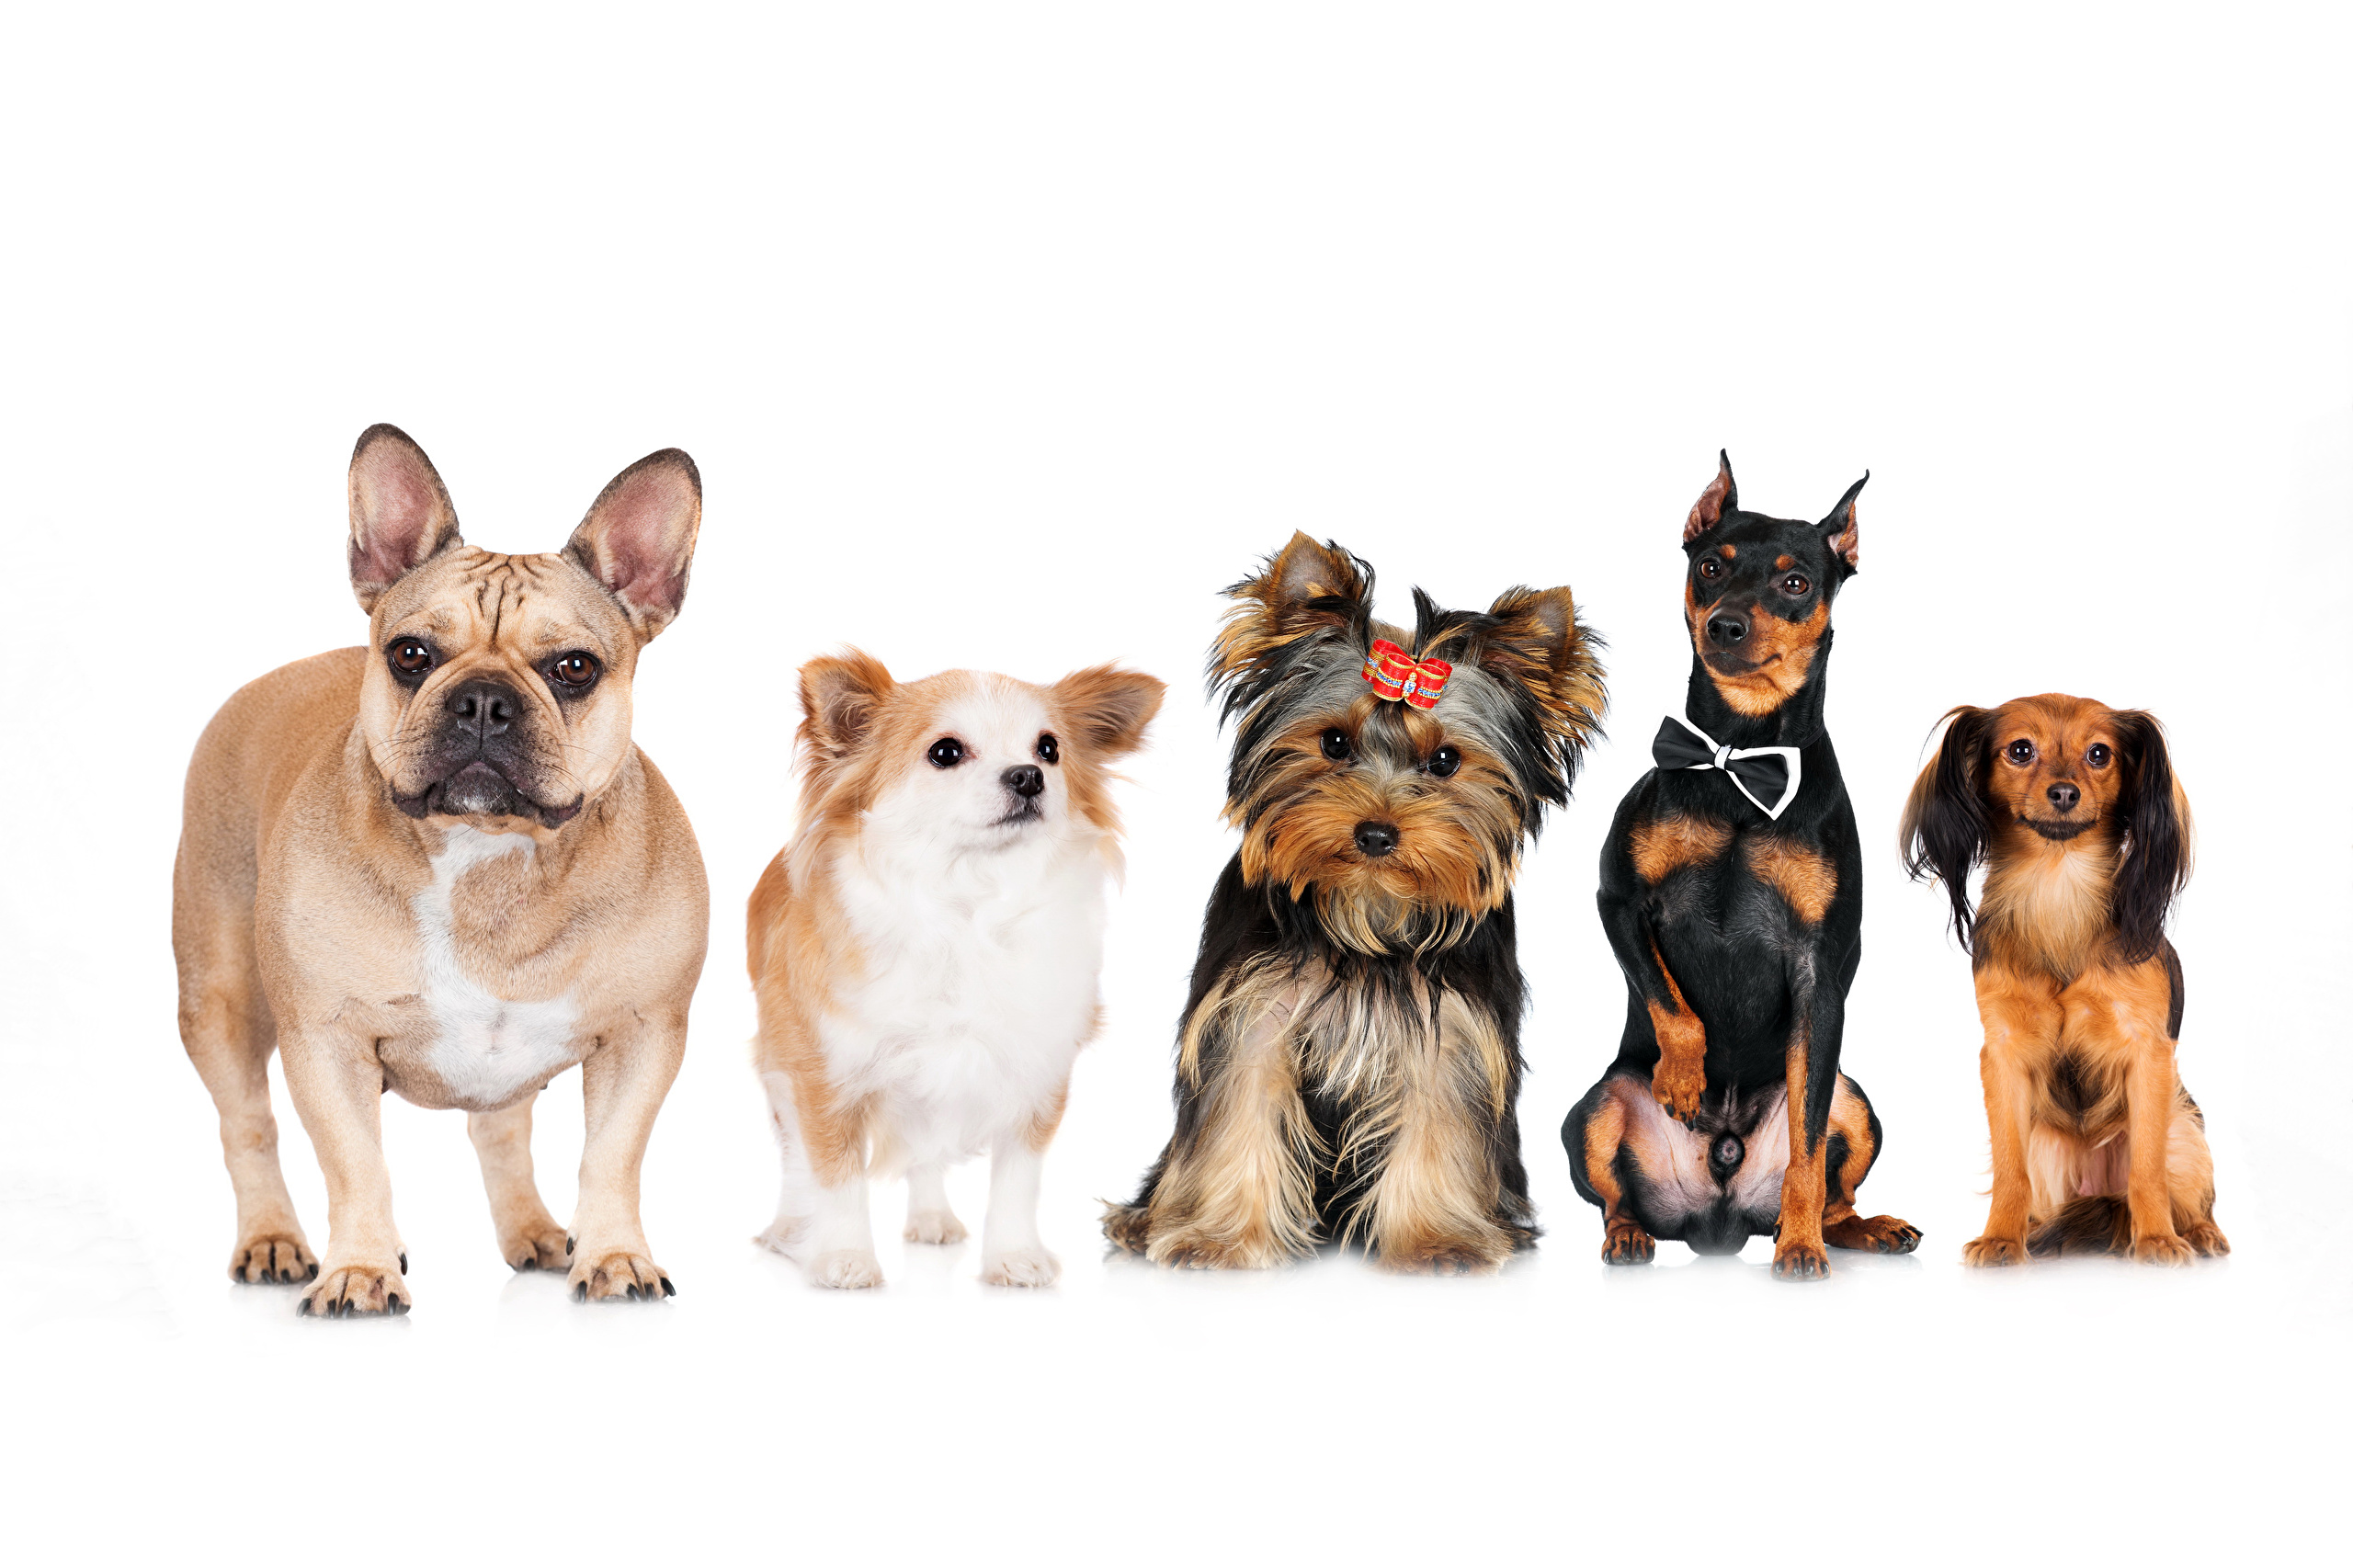 Распространённые породы маленьких домашних собак и рекомендации по их выбору